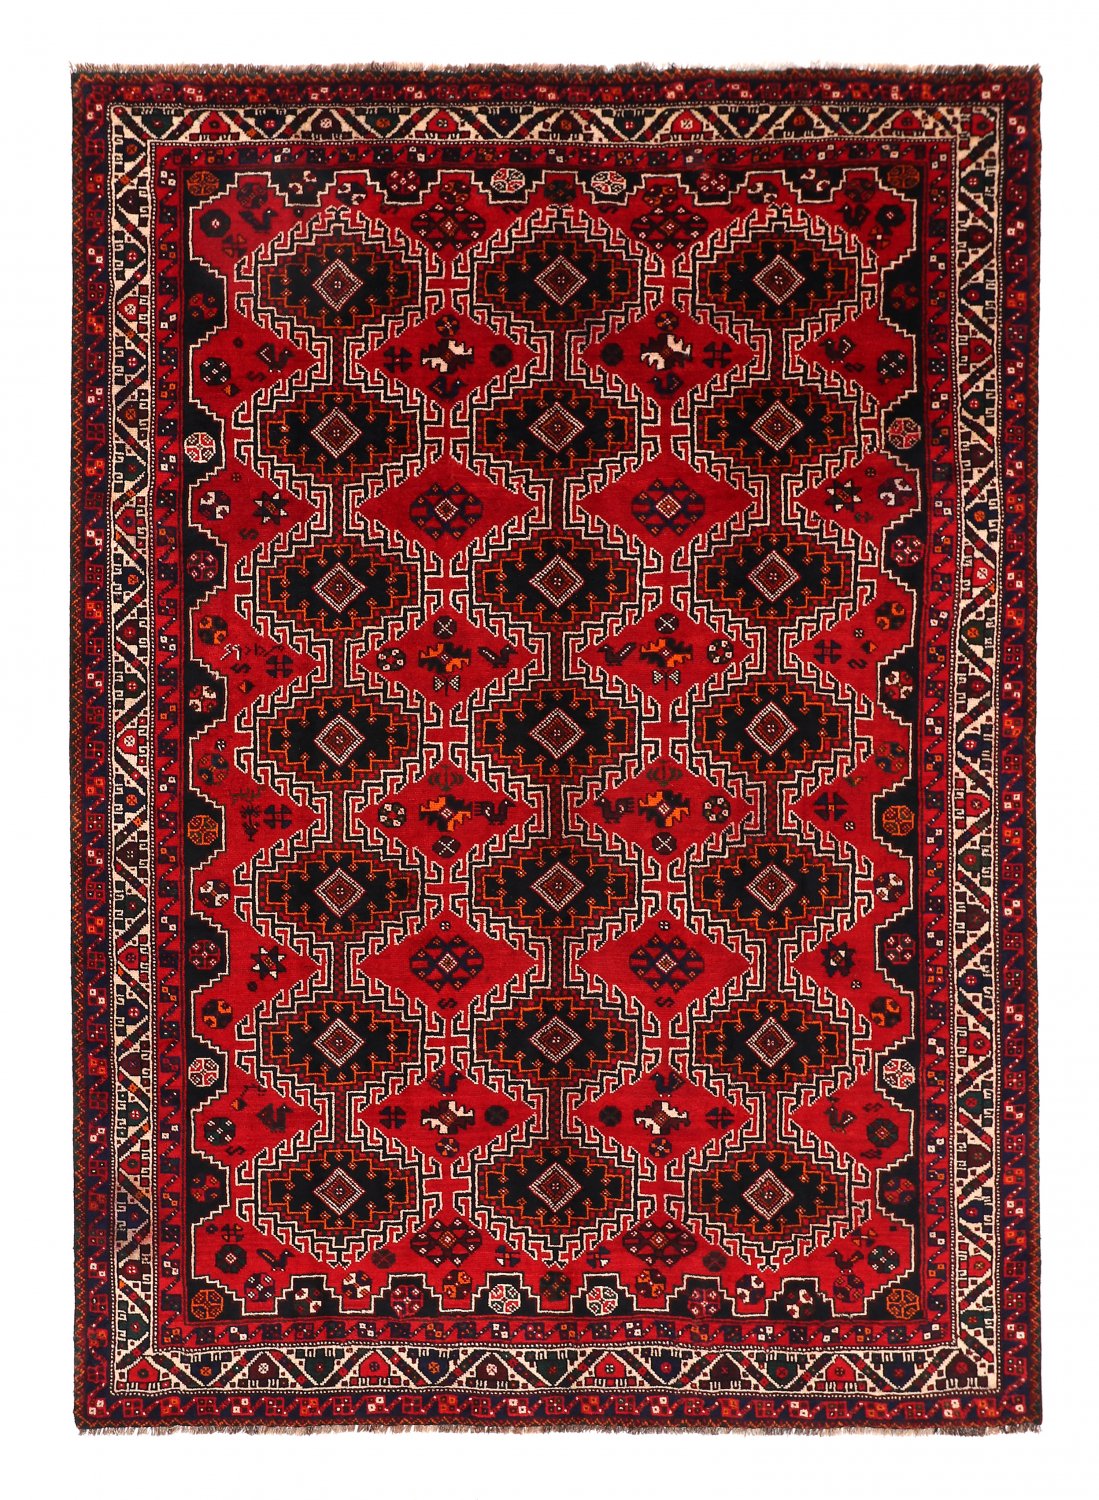 Persian rug Hamedan 303 x 216 cm